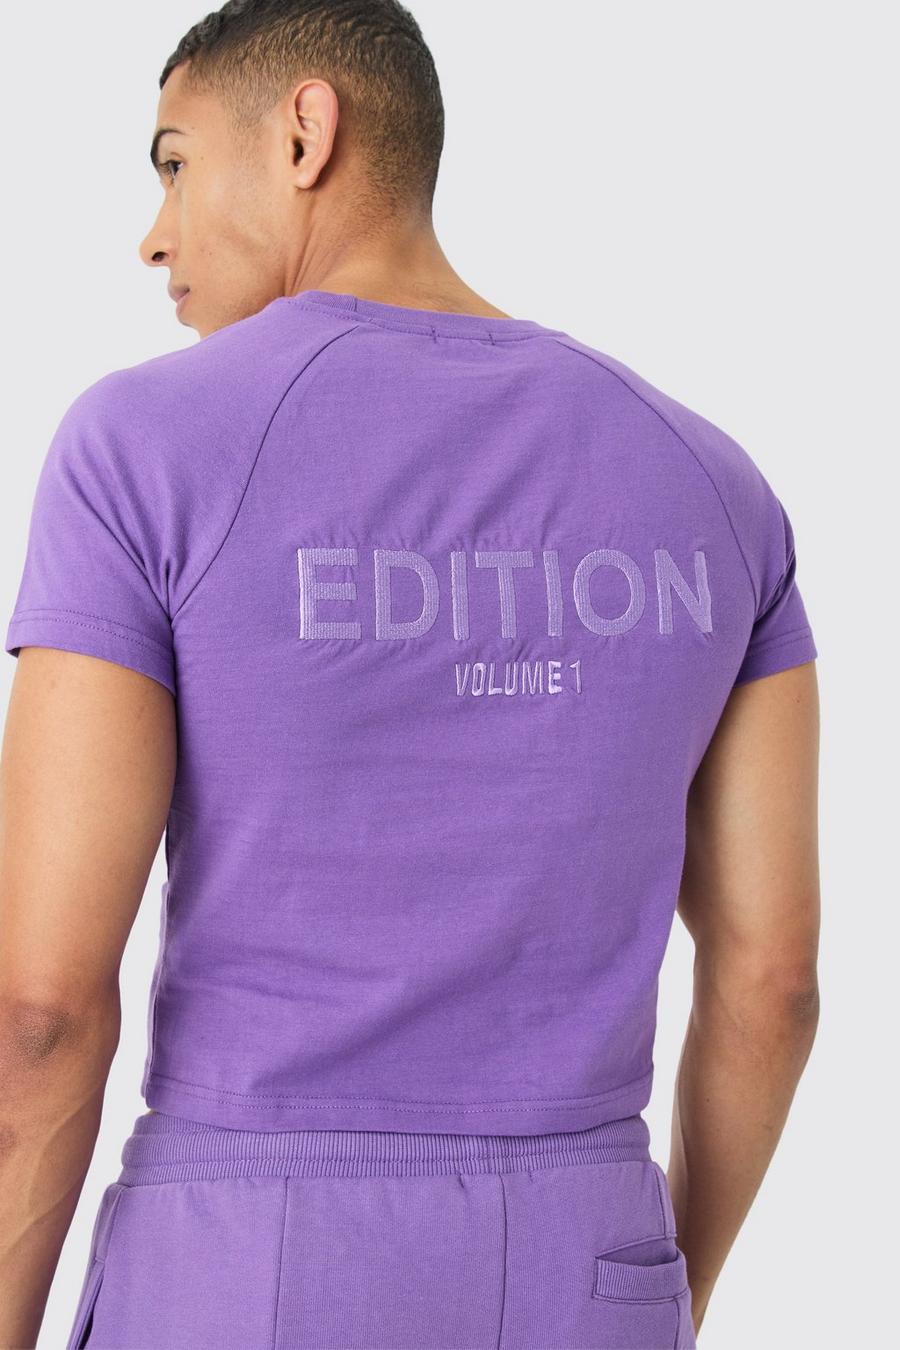 Camiseta encogida gruesa con cuello extendido de EDITION, Purple